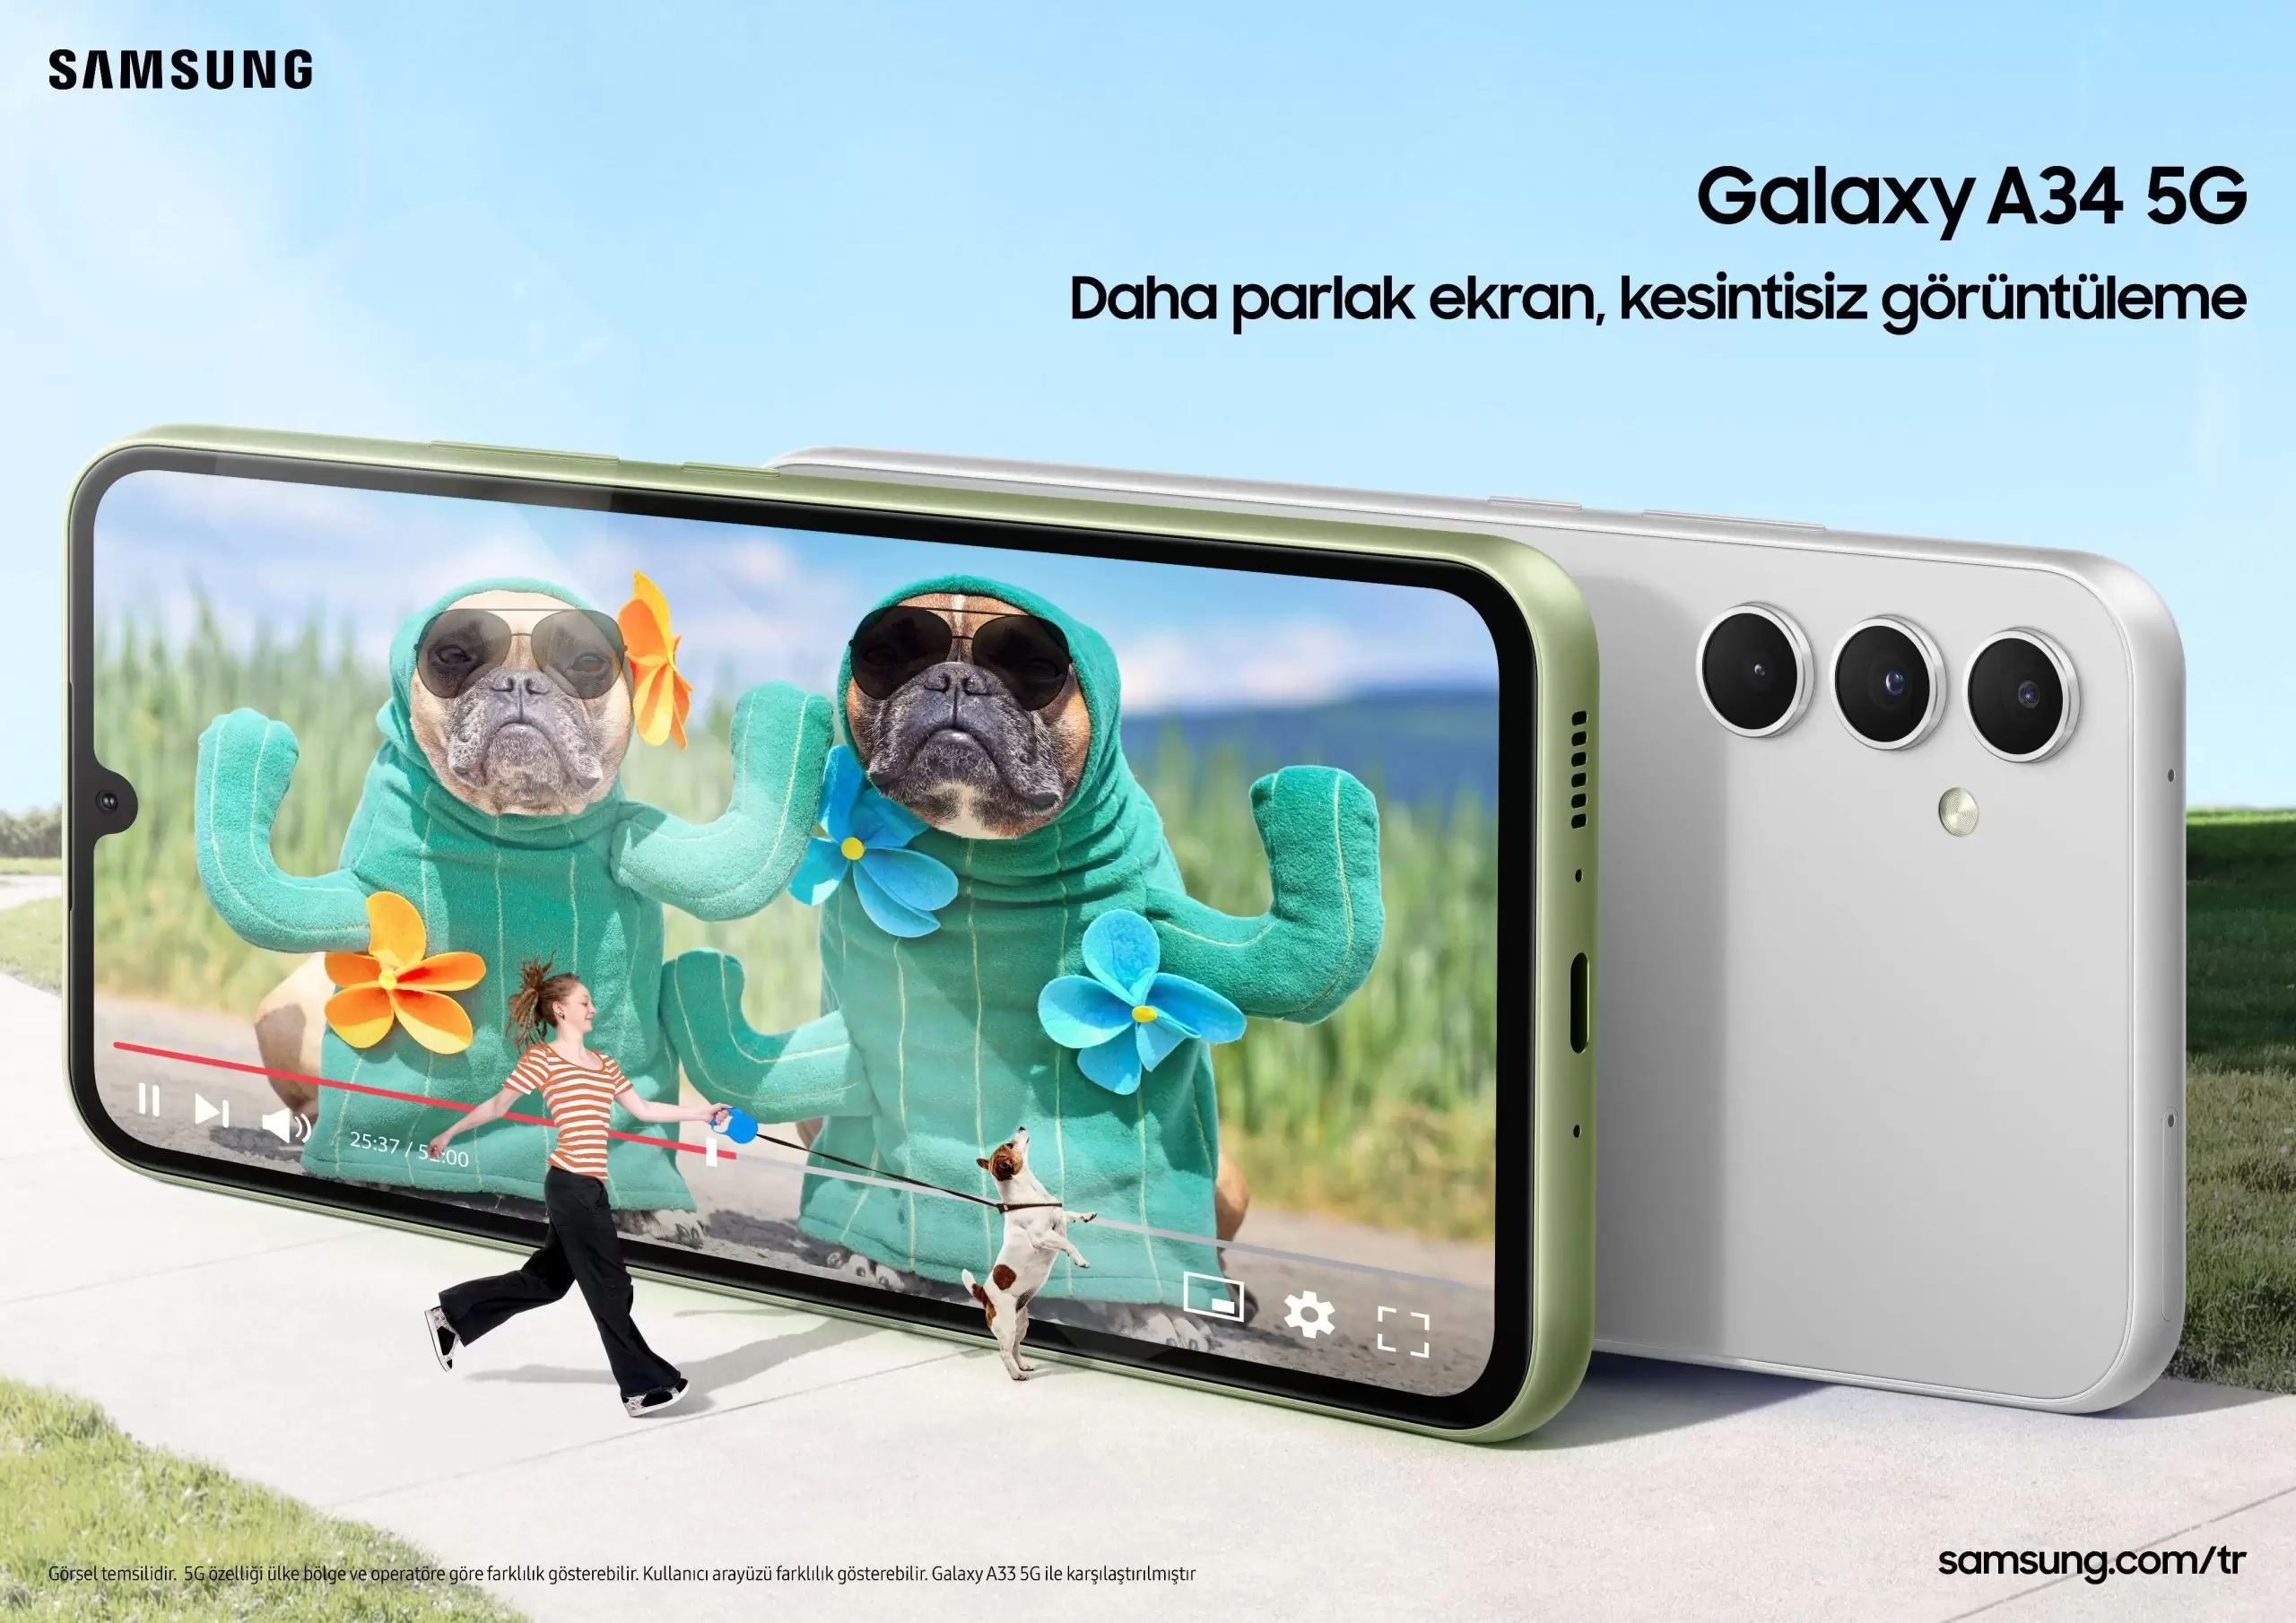 Samsung Galaxy A Serisi’ni tanıttı